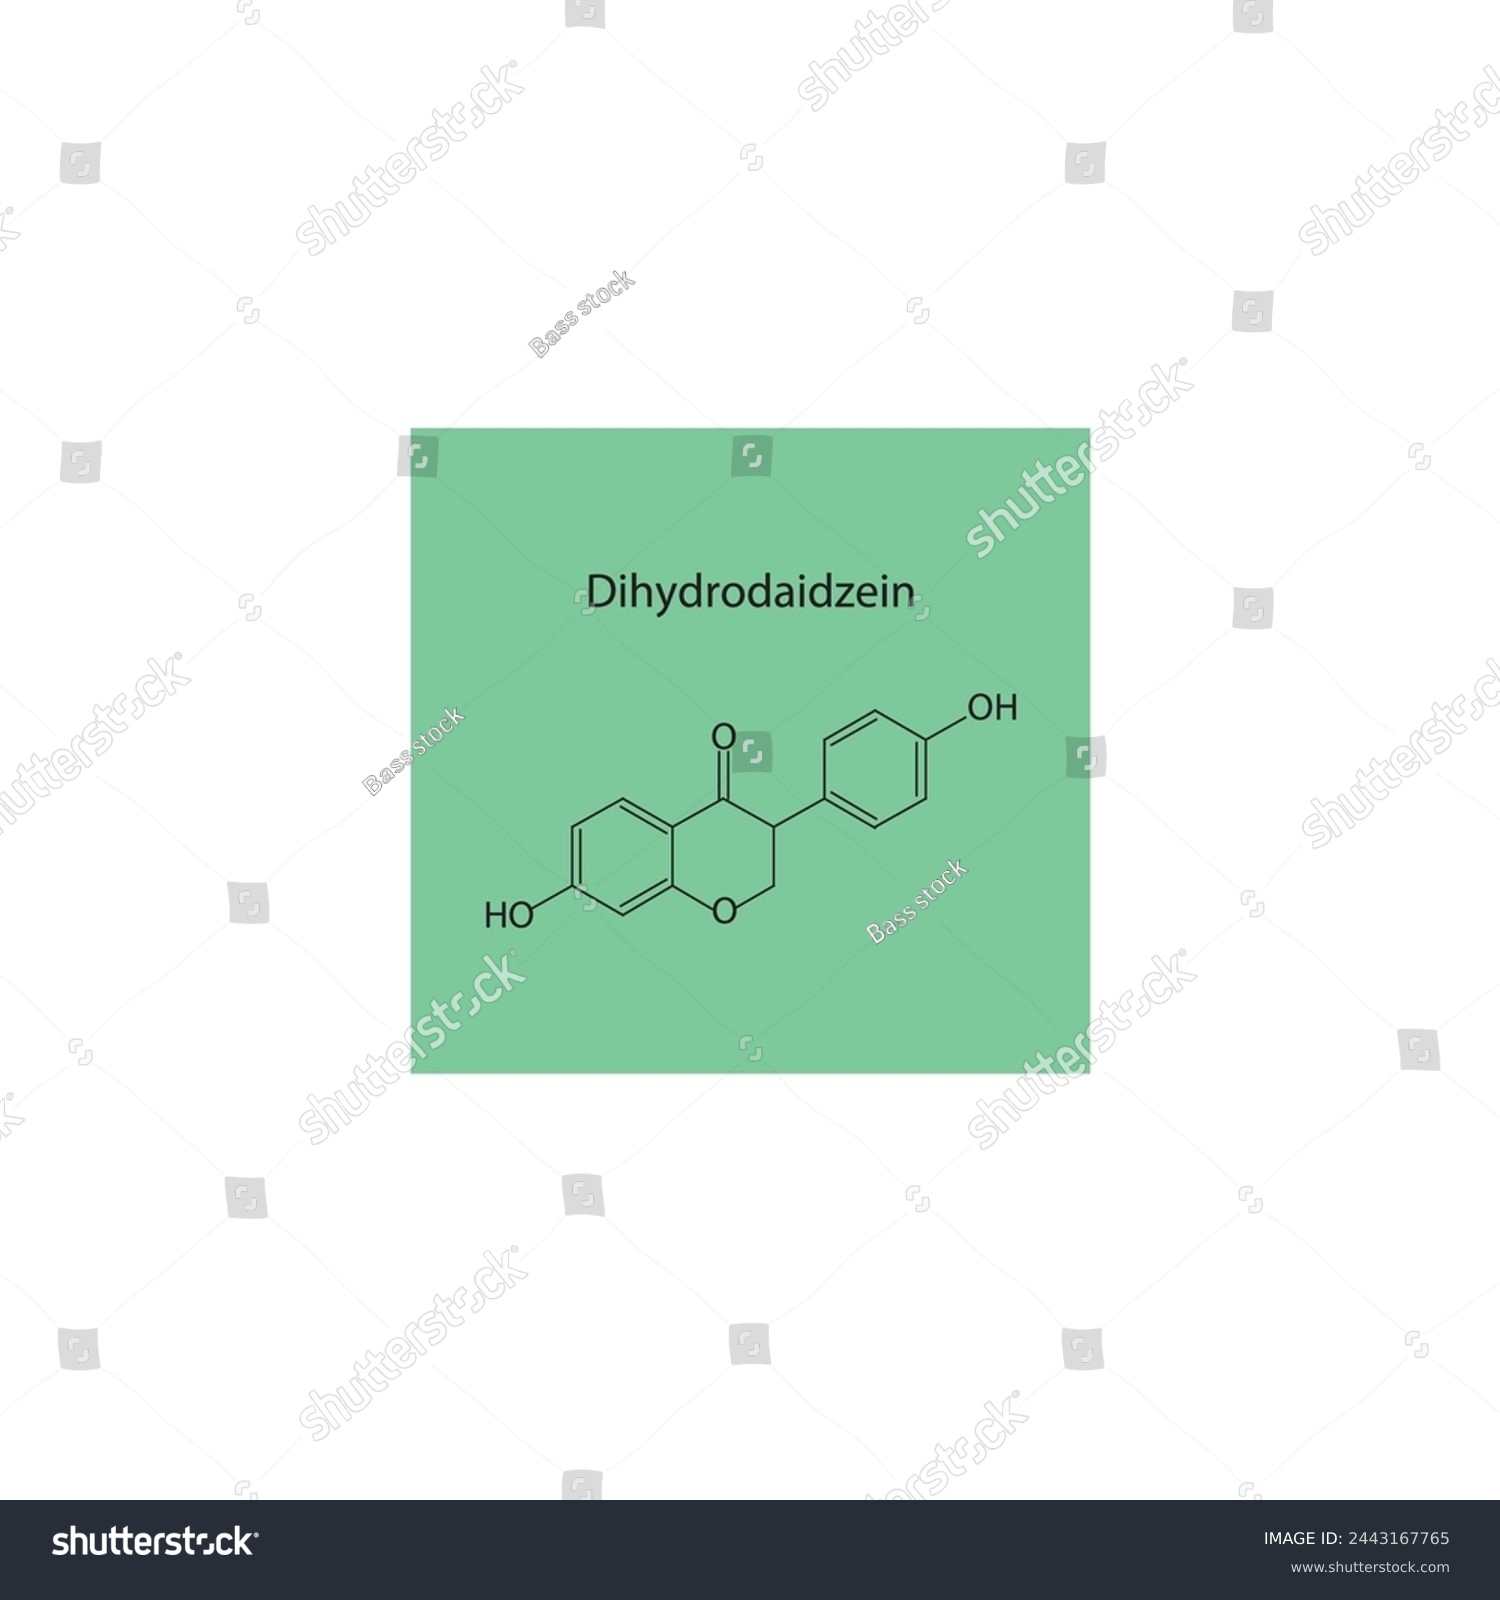 SVG of Dihydrodaidzein skeletal structure diagram.Isoflavanone compound molecule scientific illustration on green background. svg